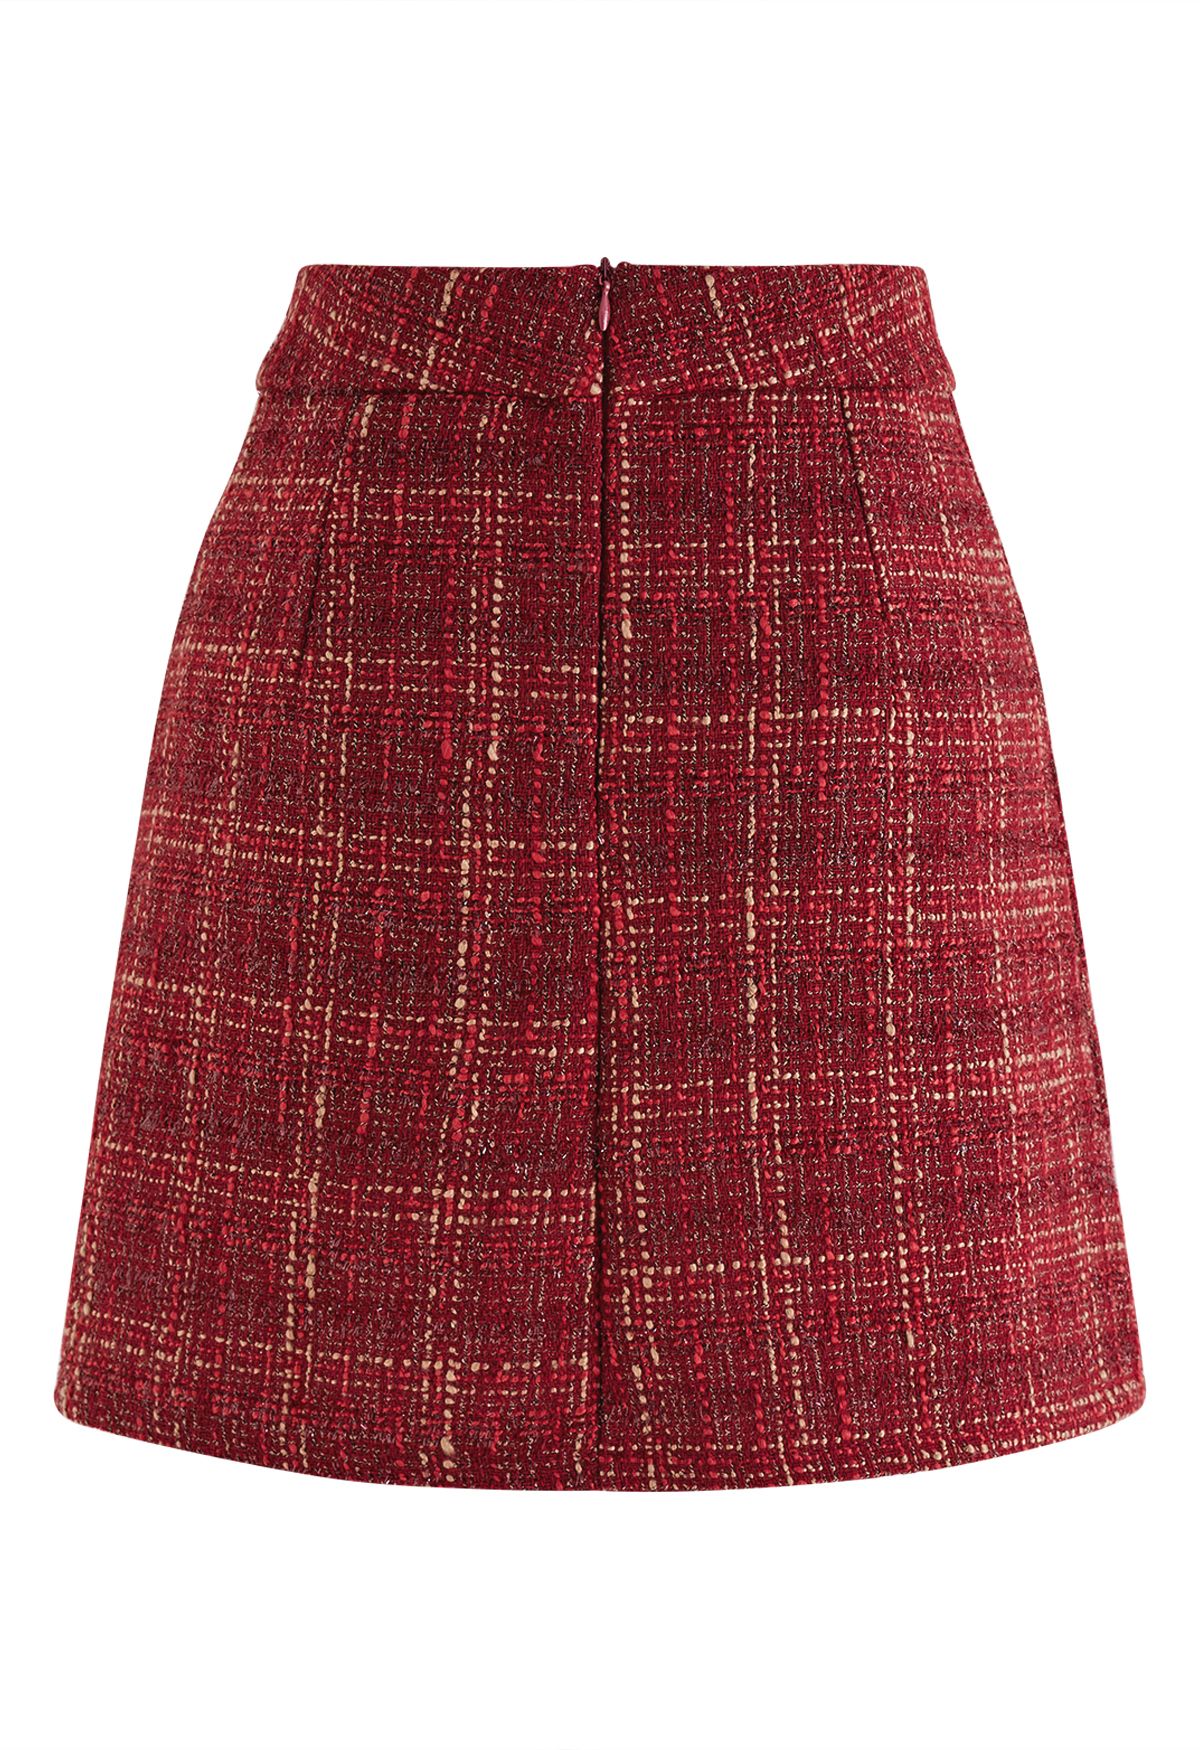 Metallic Thread Plaid Tweed Mini Skirt in Red - Retro, Indie and Unique ...